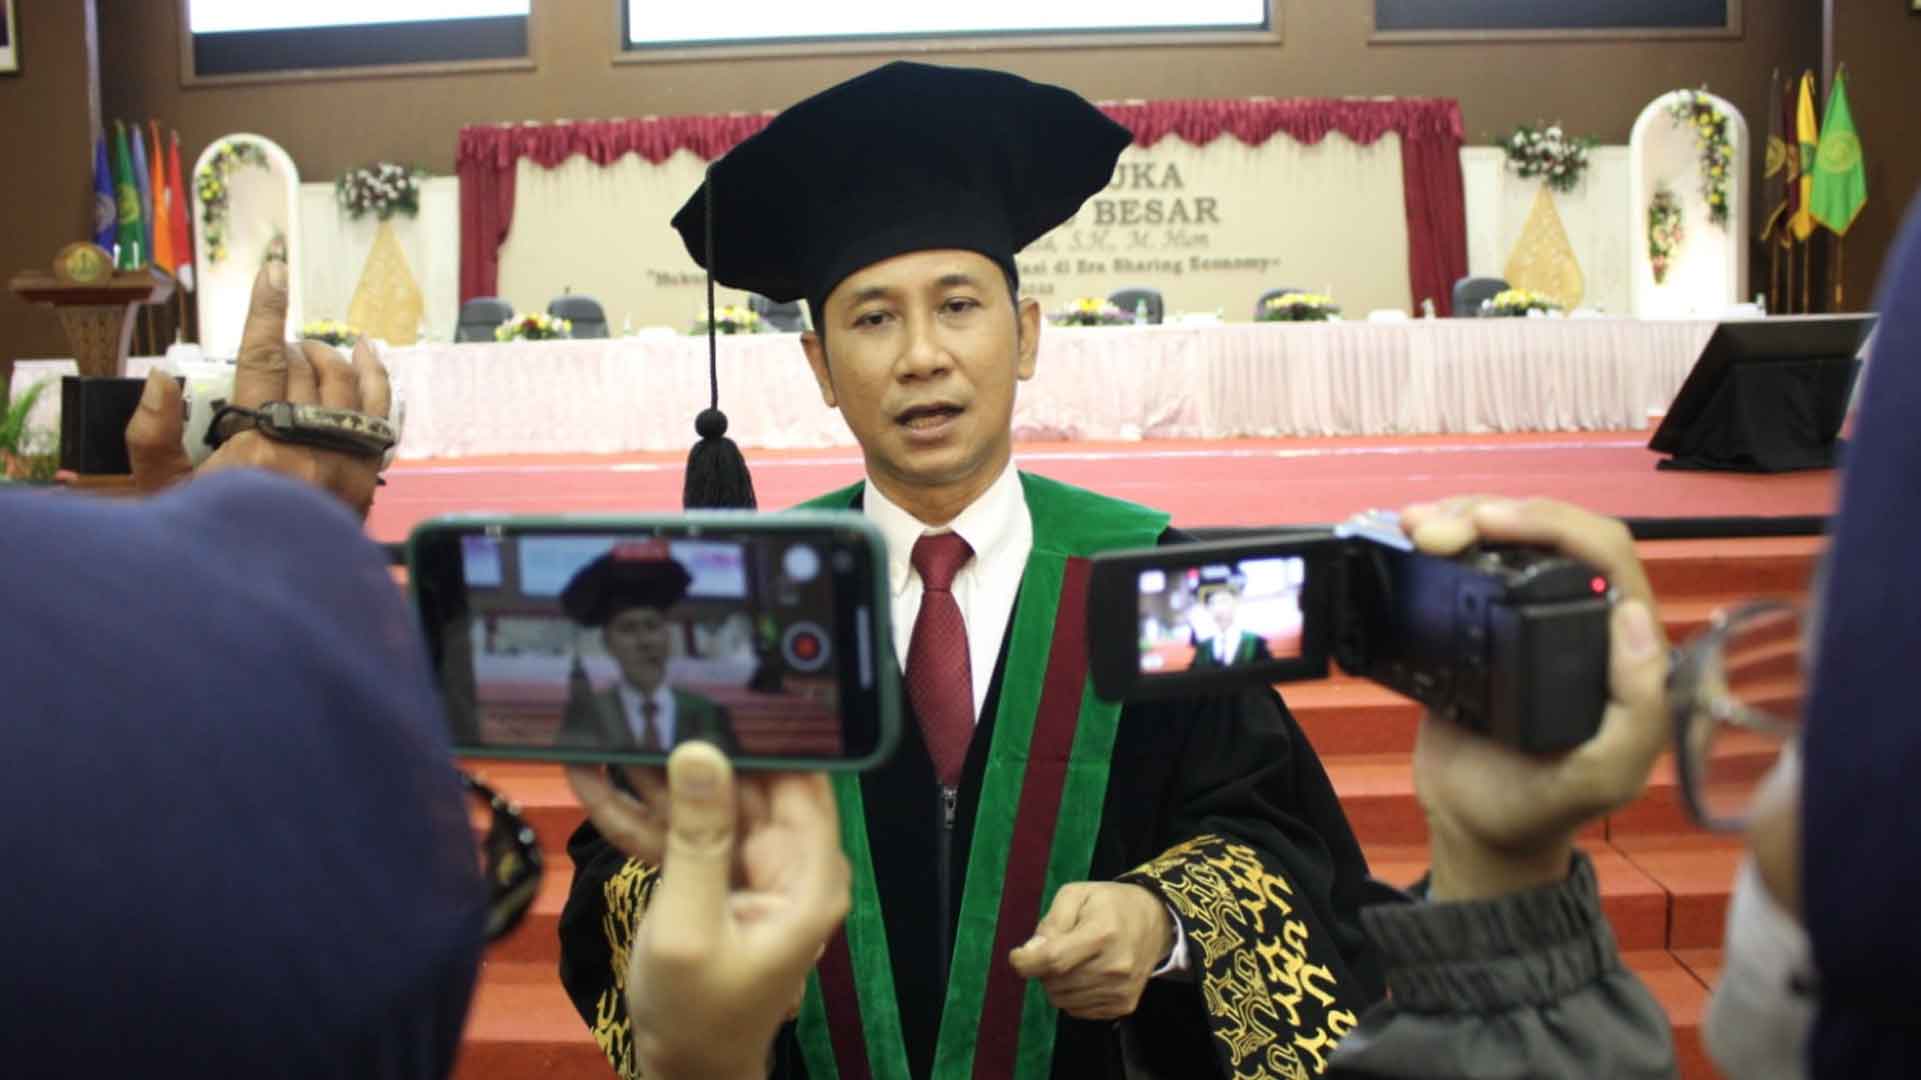 Ketua KY Dikukuhkan Sebagai Guru Besar Universitas Muhammadiyah Yogyakarta